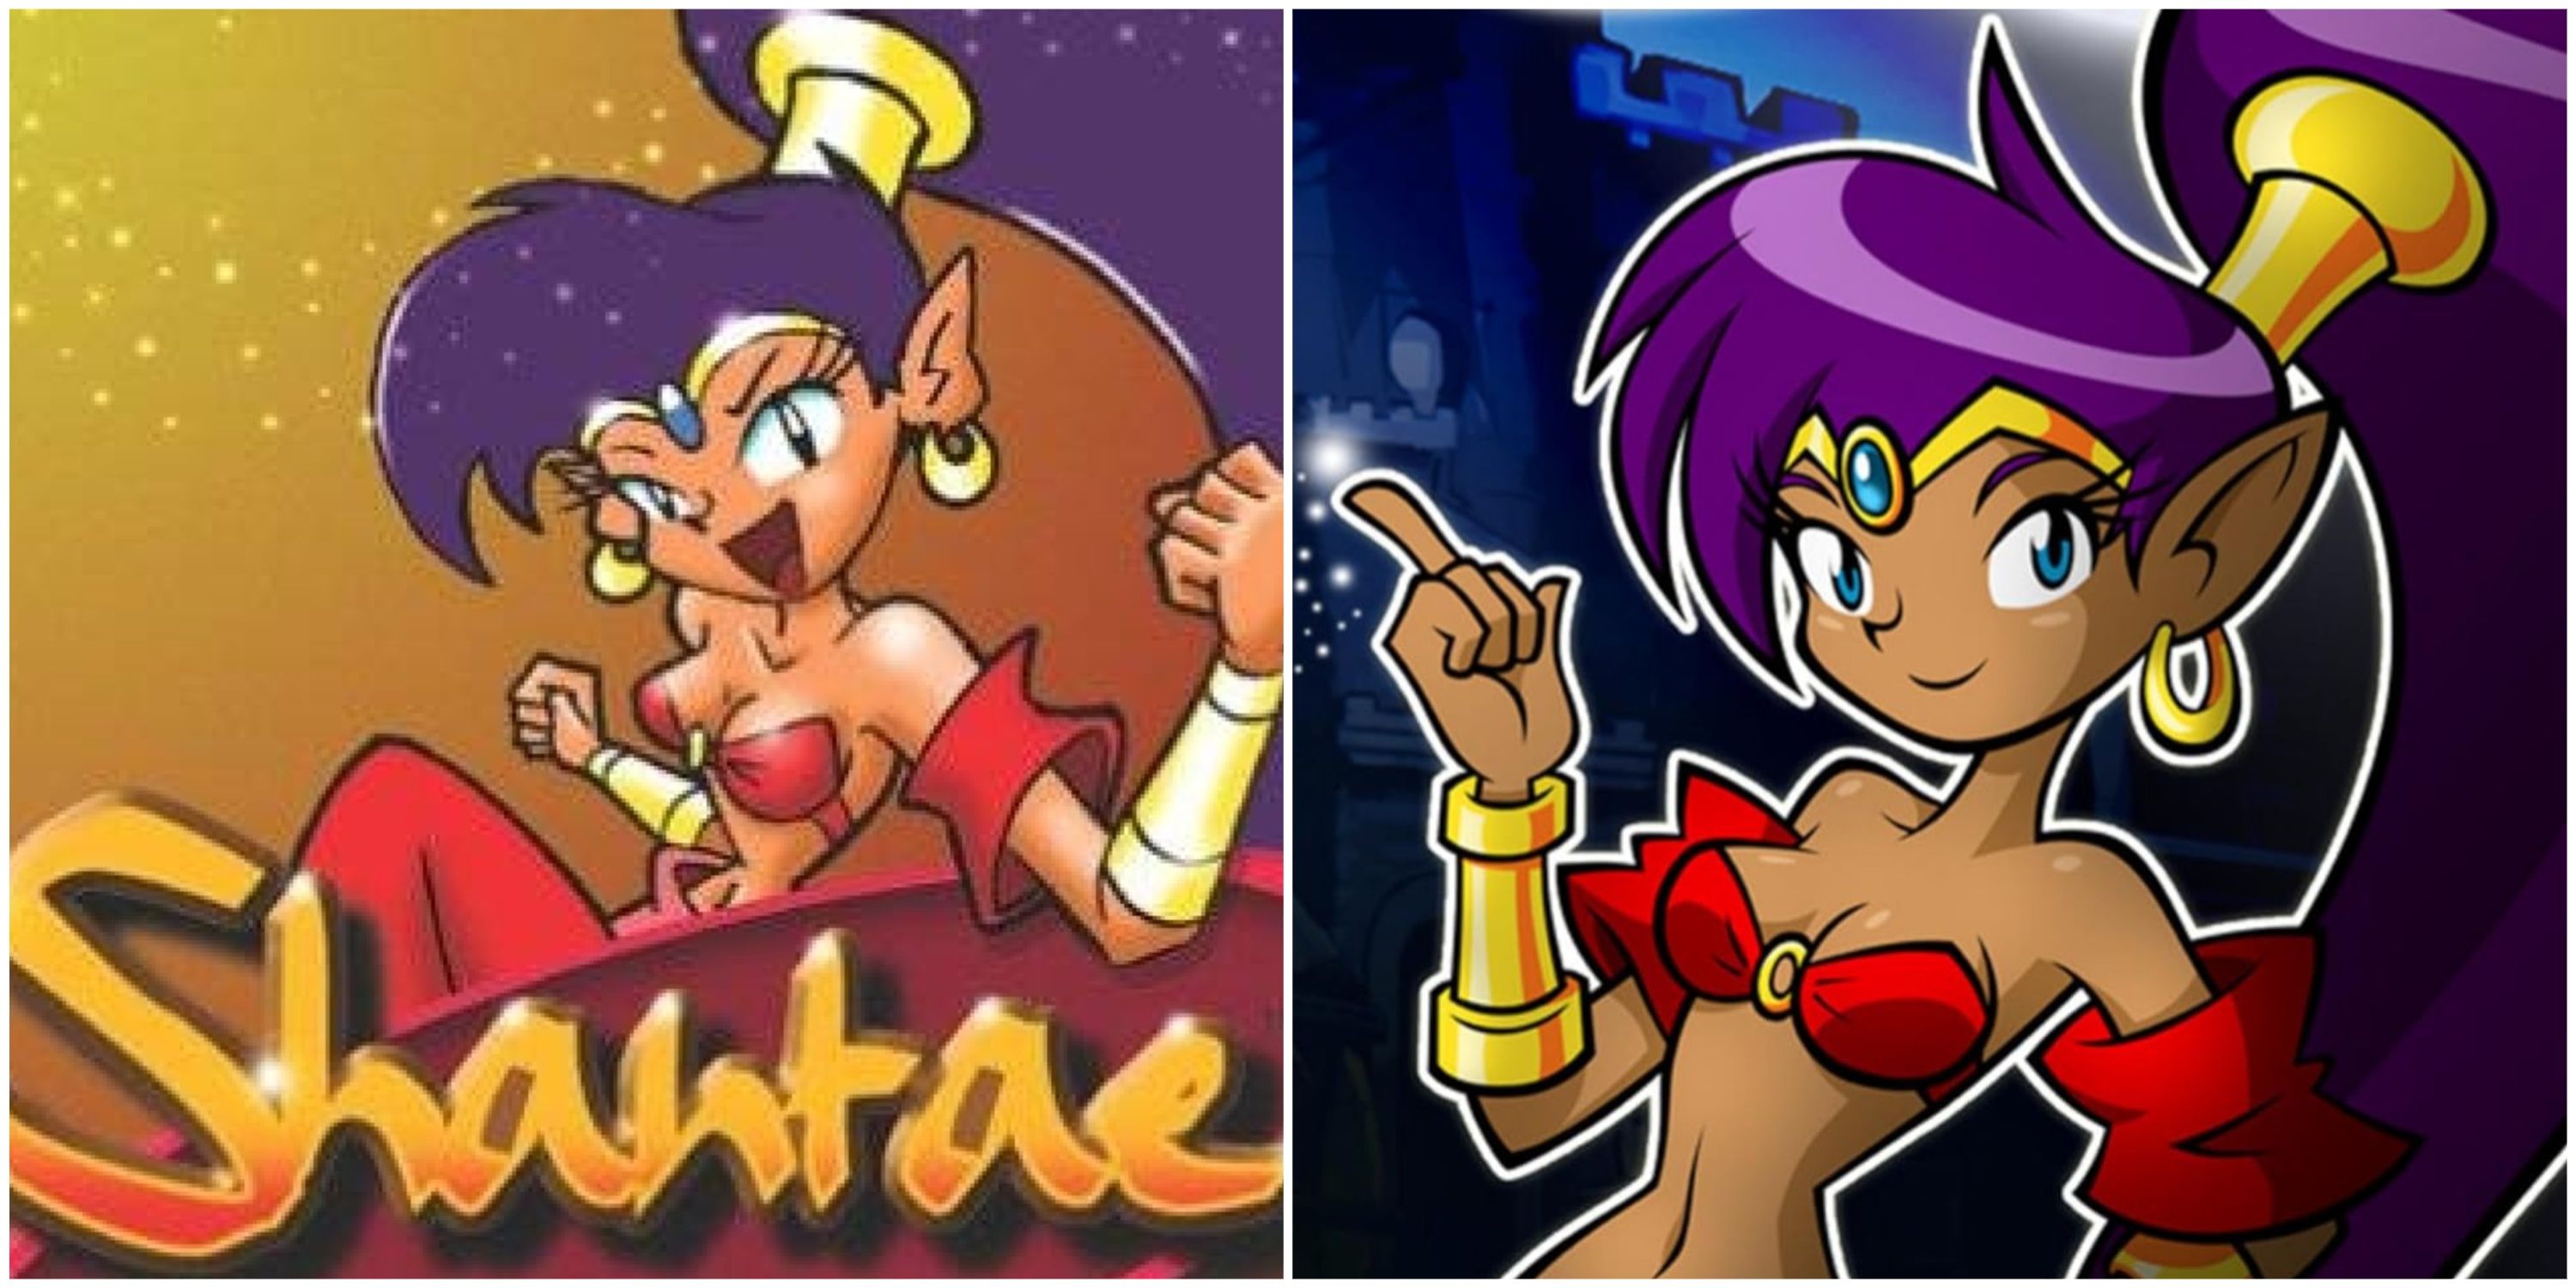 The original Shantae and Shantae: Risky's Revenge